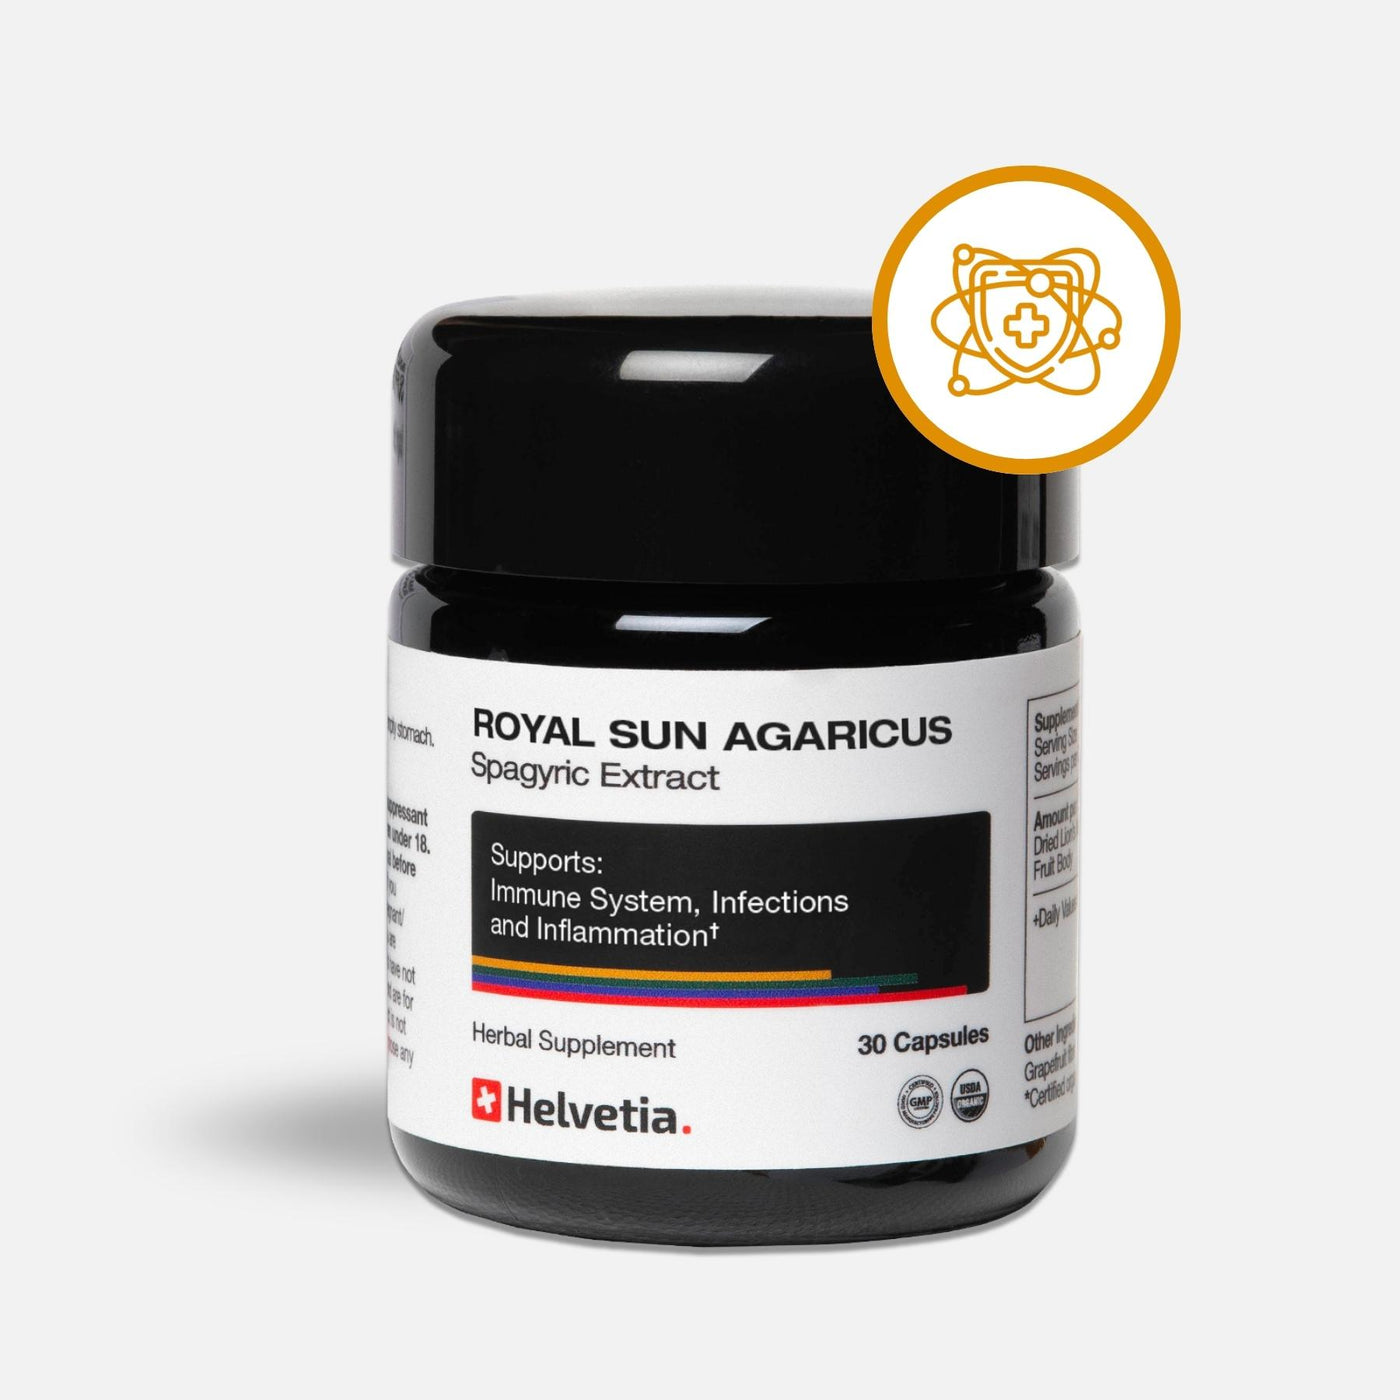 Royal Sun Agaricus Spagyric Extract (Royal Sun Agaricus Extrait Spagyrique)